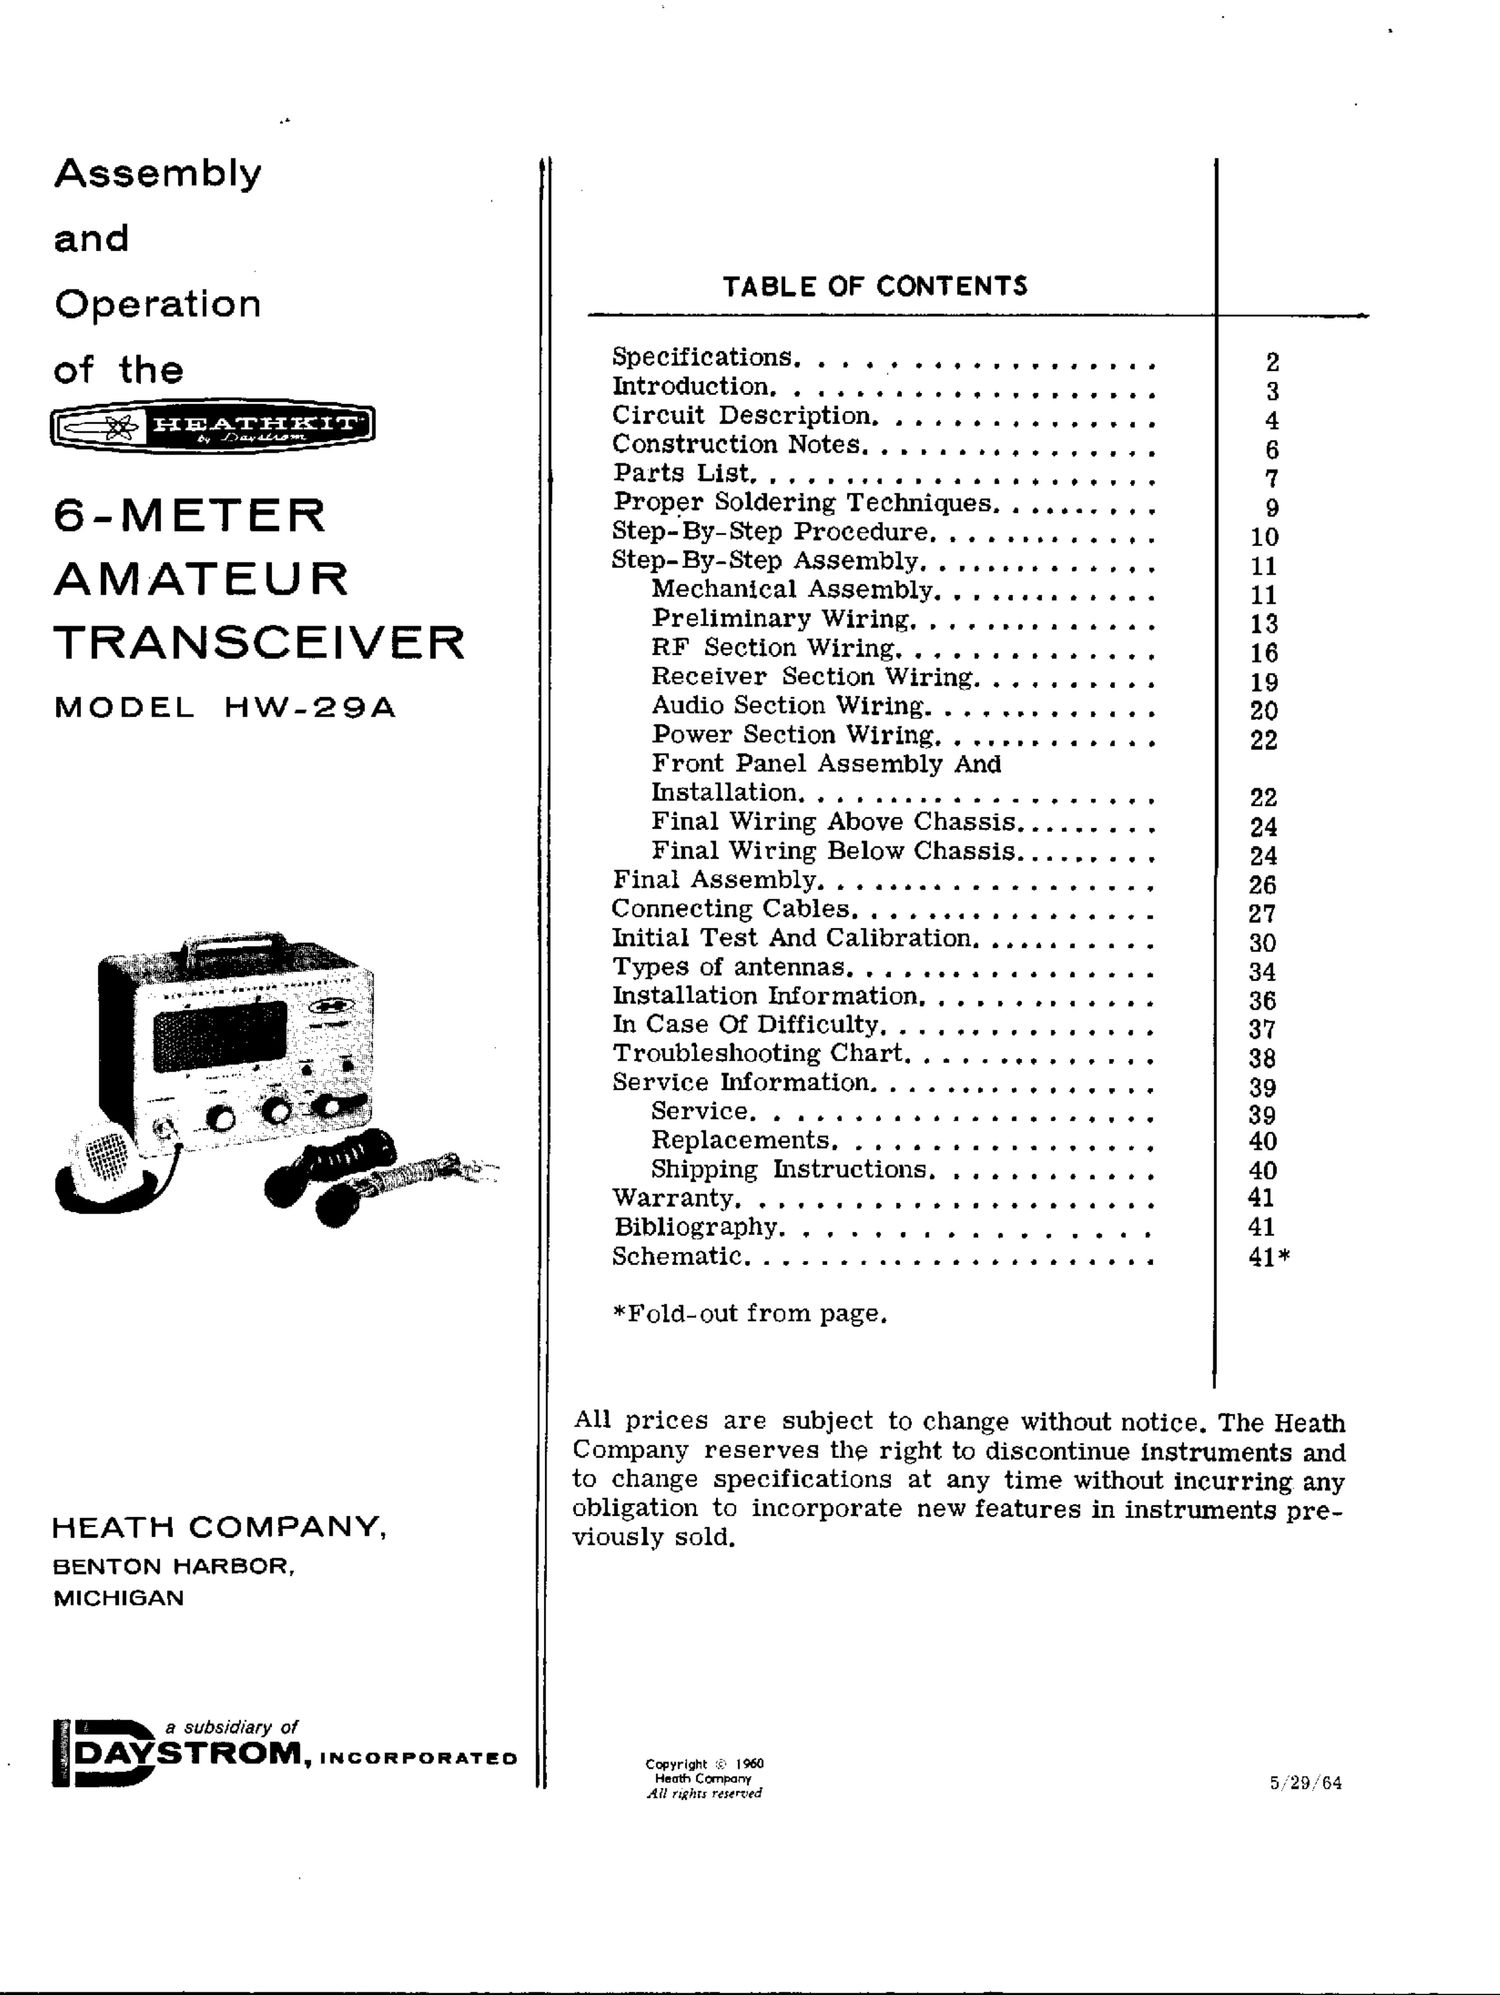 Heathkit HW 29A Manual